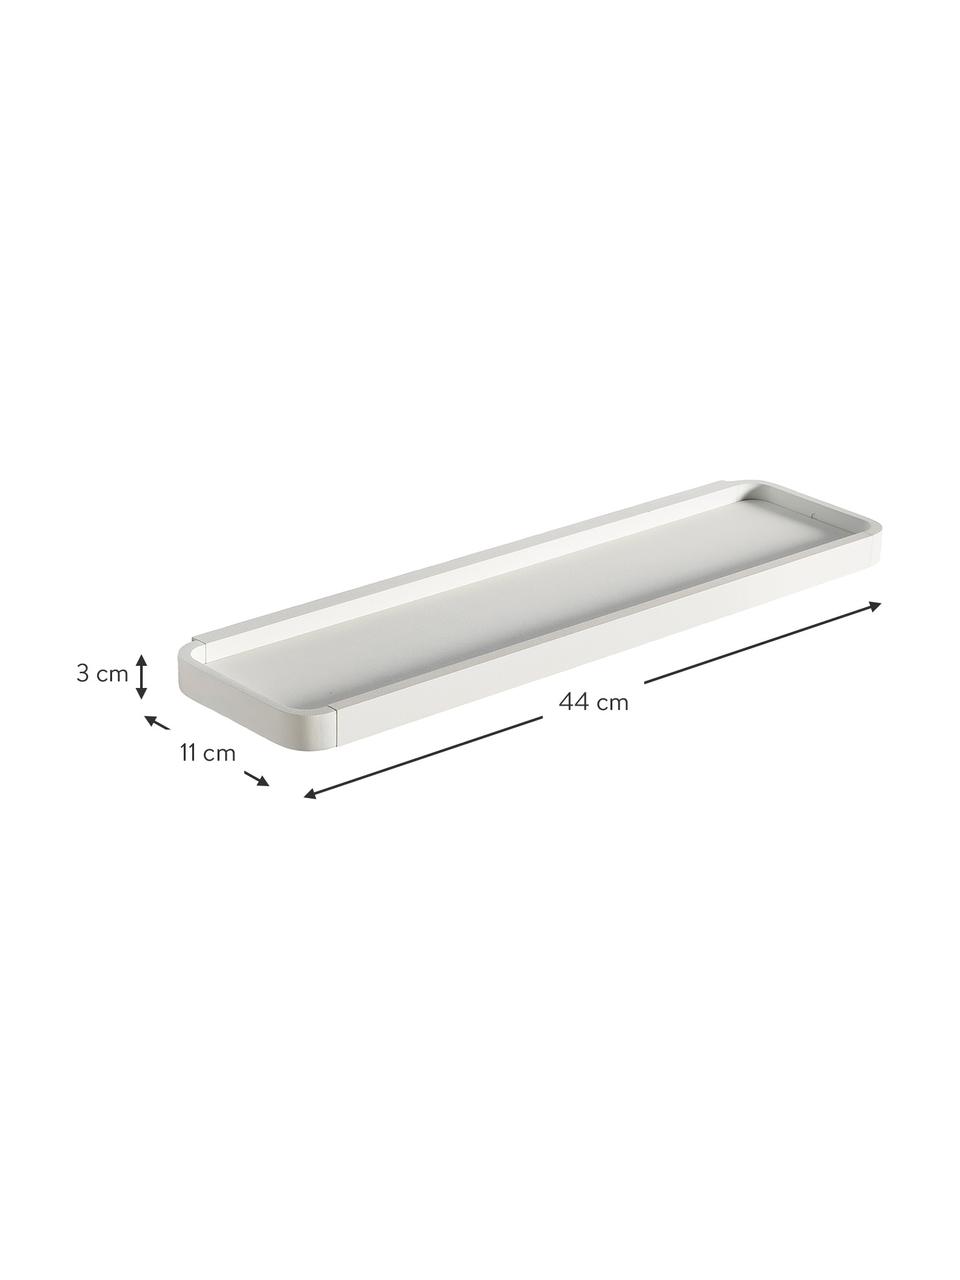 Łazienkowa półka ścienna z metalu Rim, Aluminium powlekane, Biały, S 44 x G 11 cm